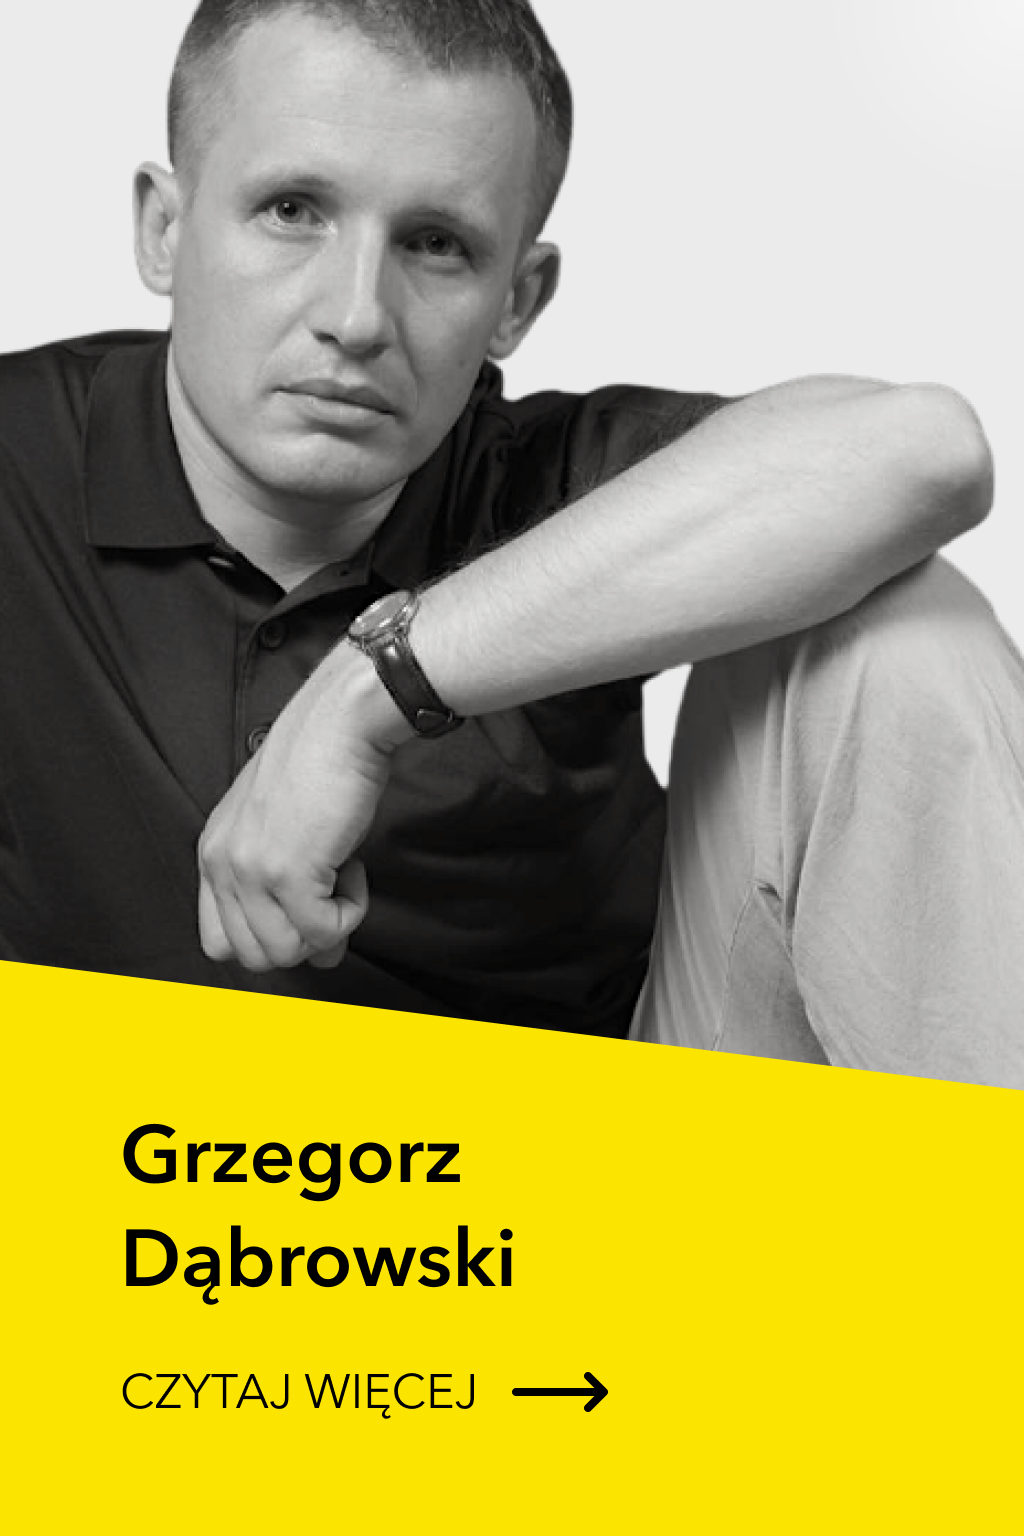 Grzegorz Dąbrowski